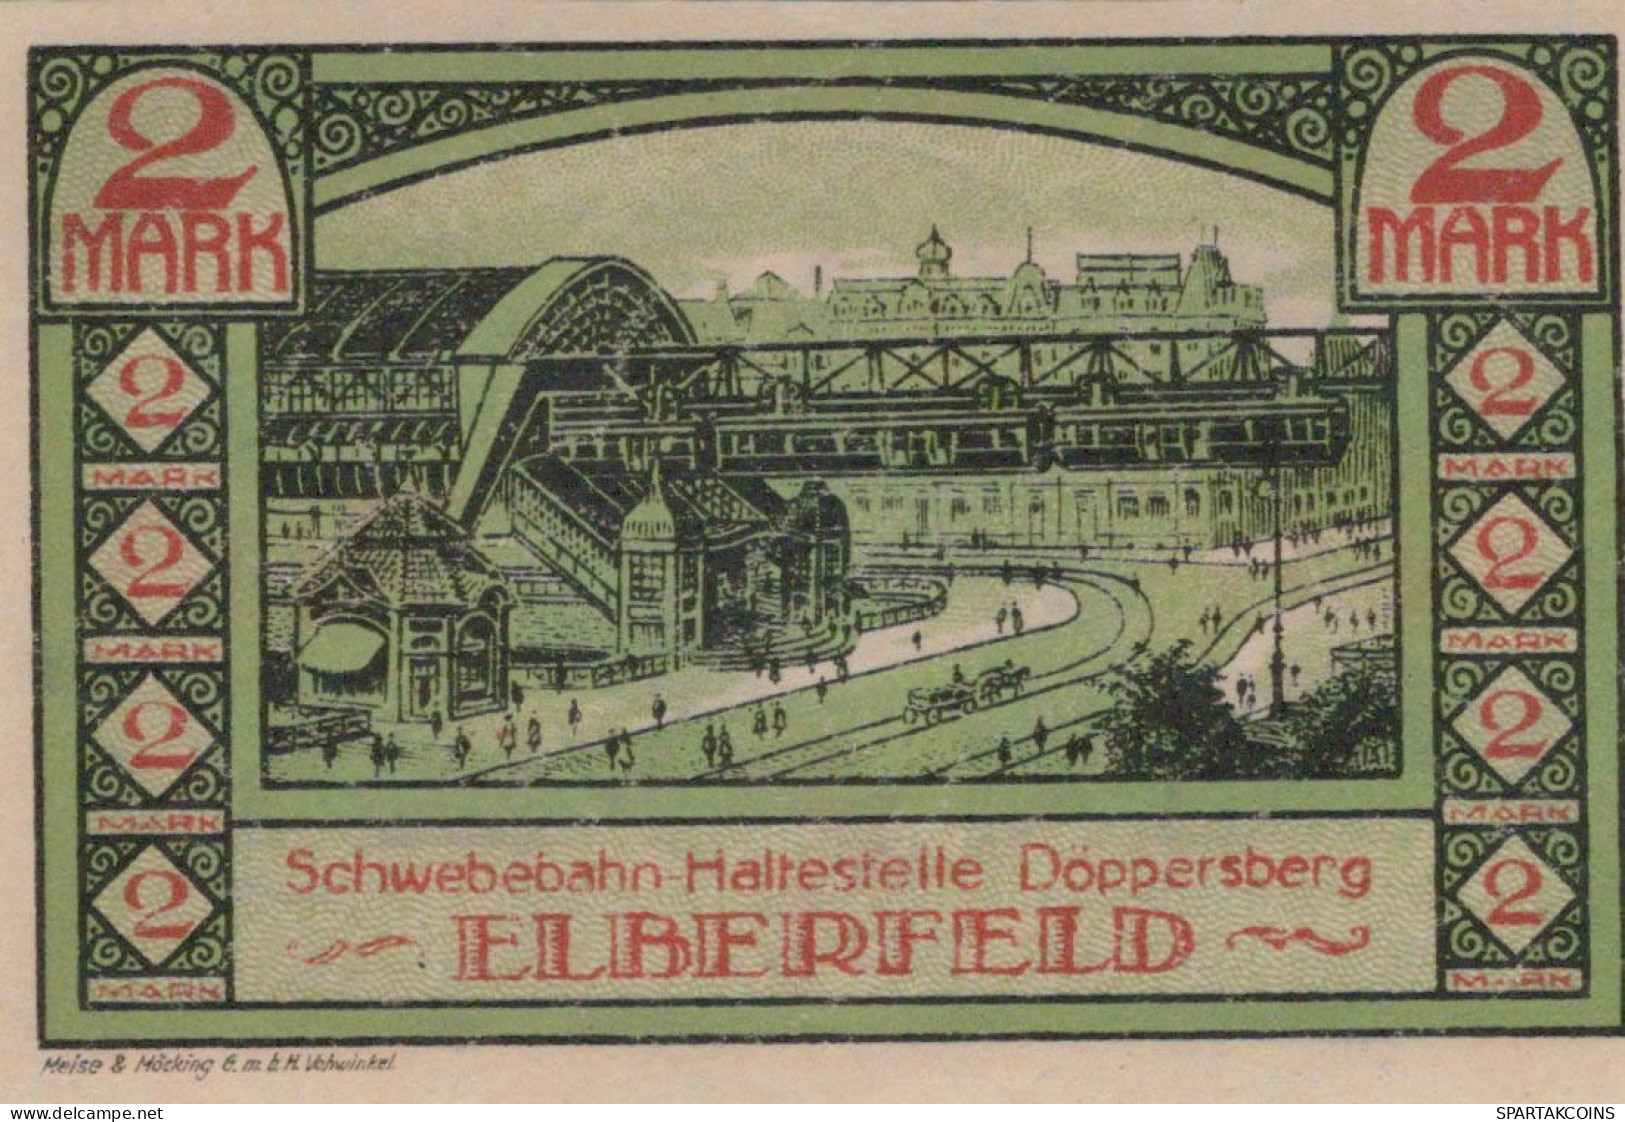 2 MARK 1920 Stadt ELBERFELD Rhine UNC DEUTSCHLAND Notgeld Banknote #PB161 - Lokale Ausgaben